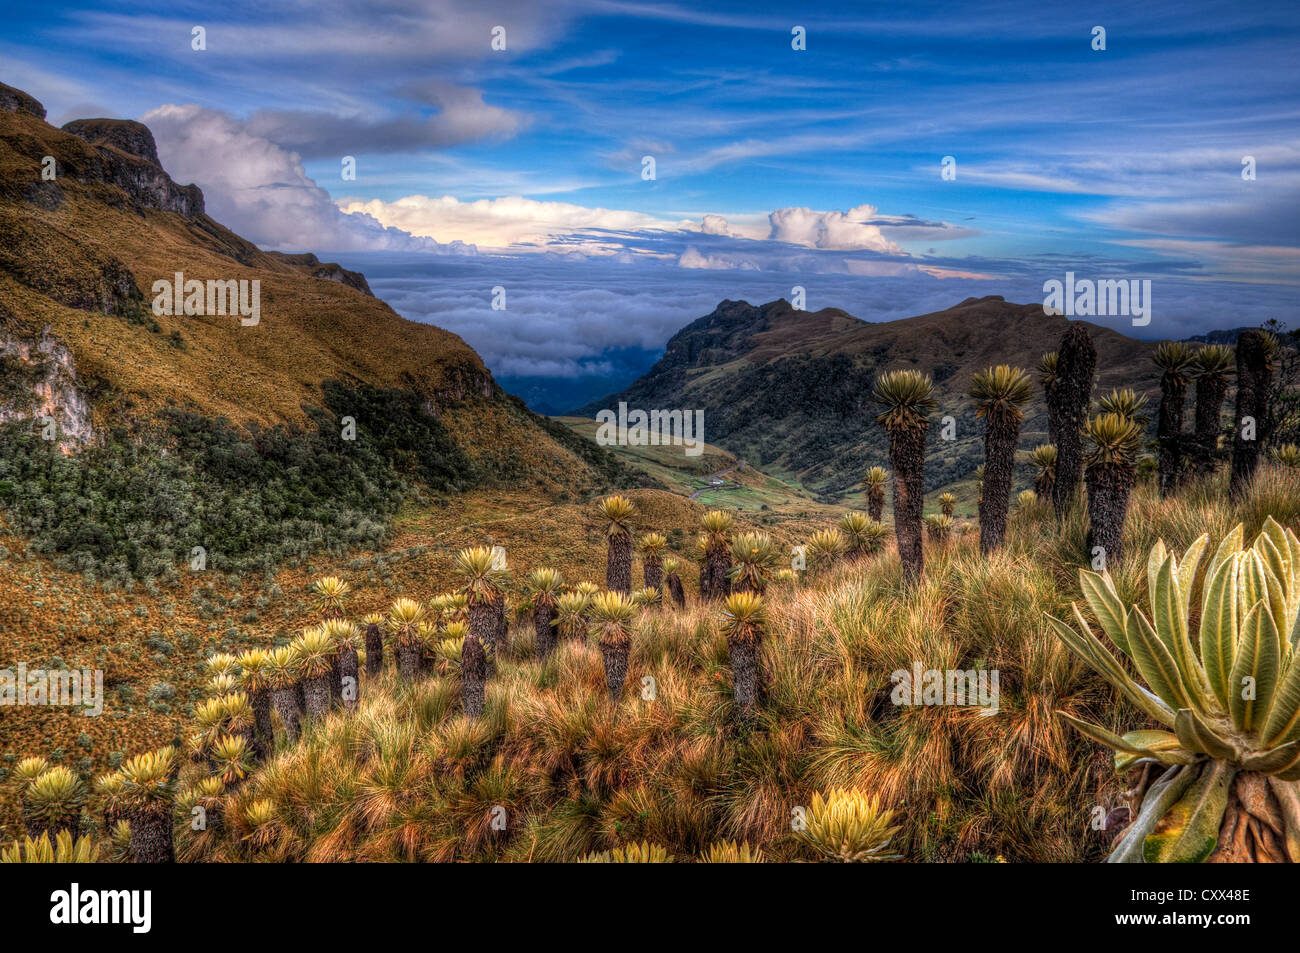 Paramo landscape in Colombia near Nevado del Ruiz dotted with espeletia plants. Stock Photo